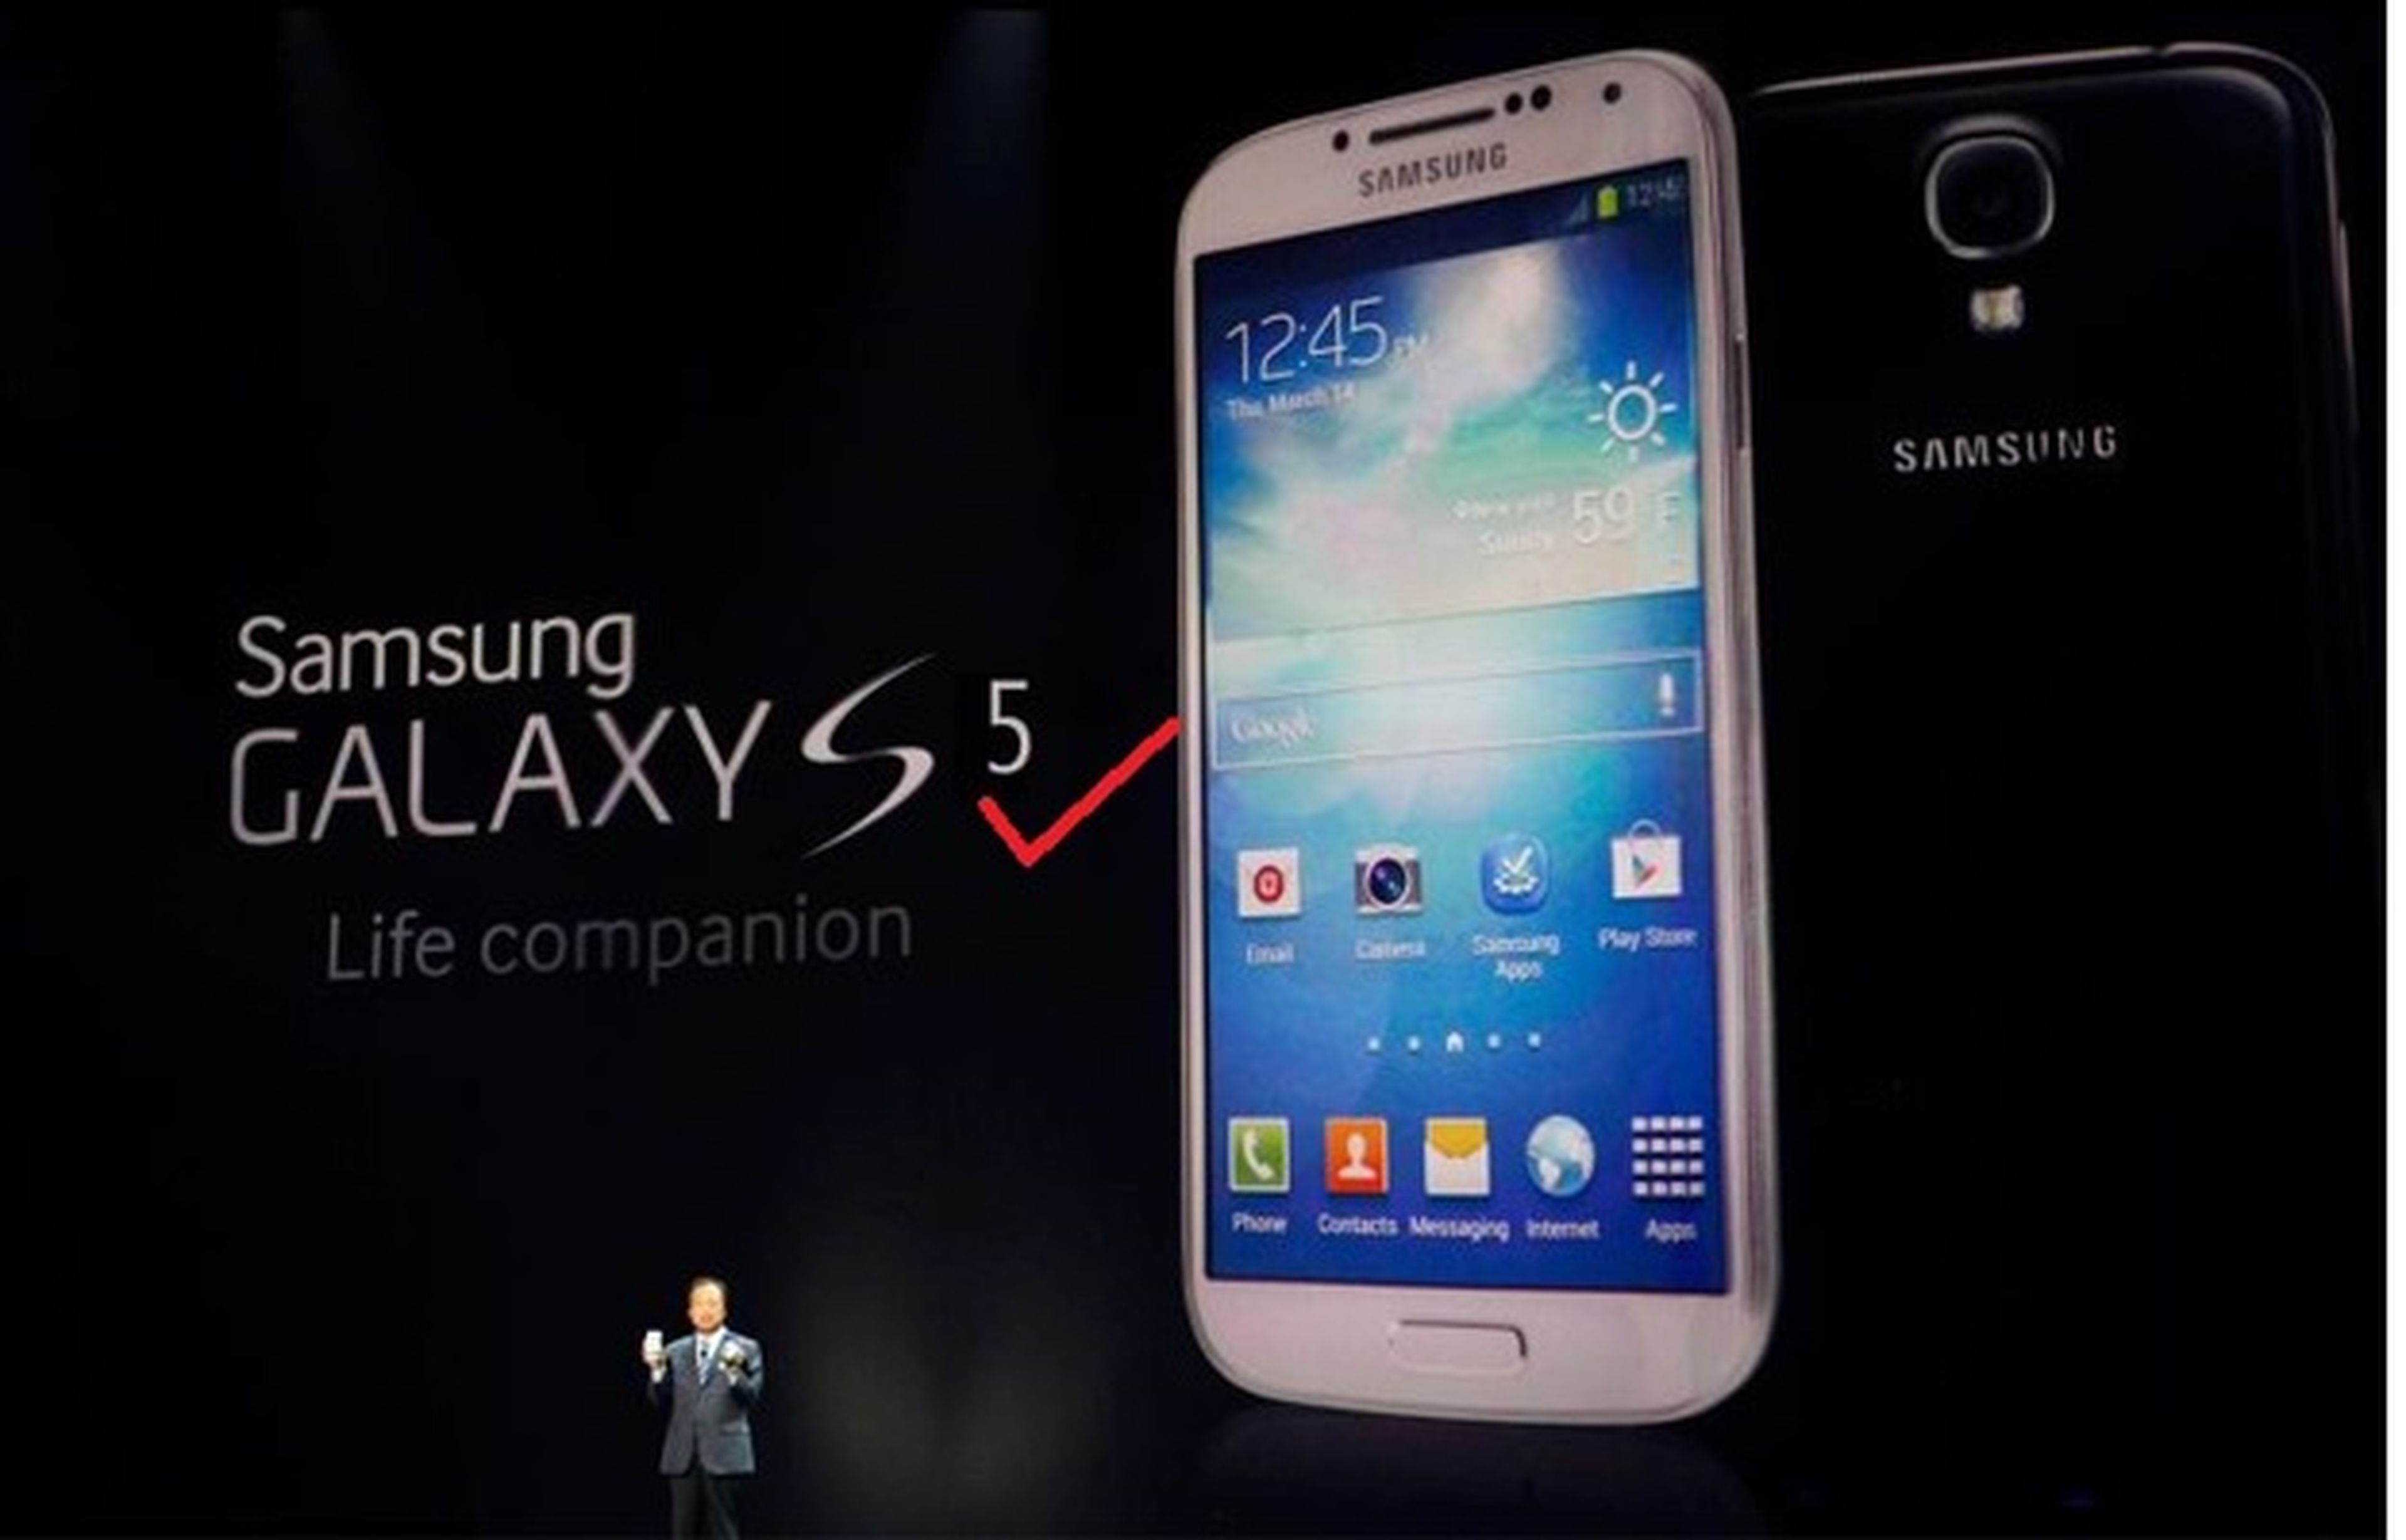 Samsung Galaxy SV